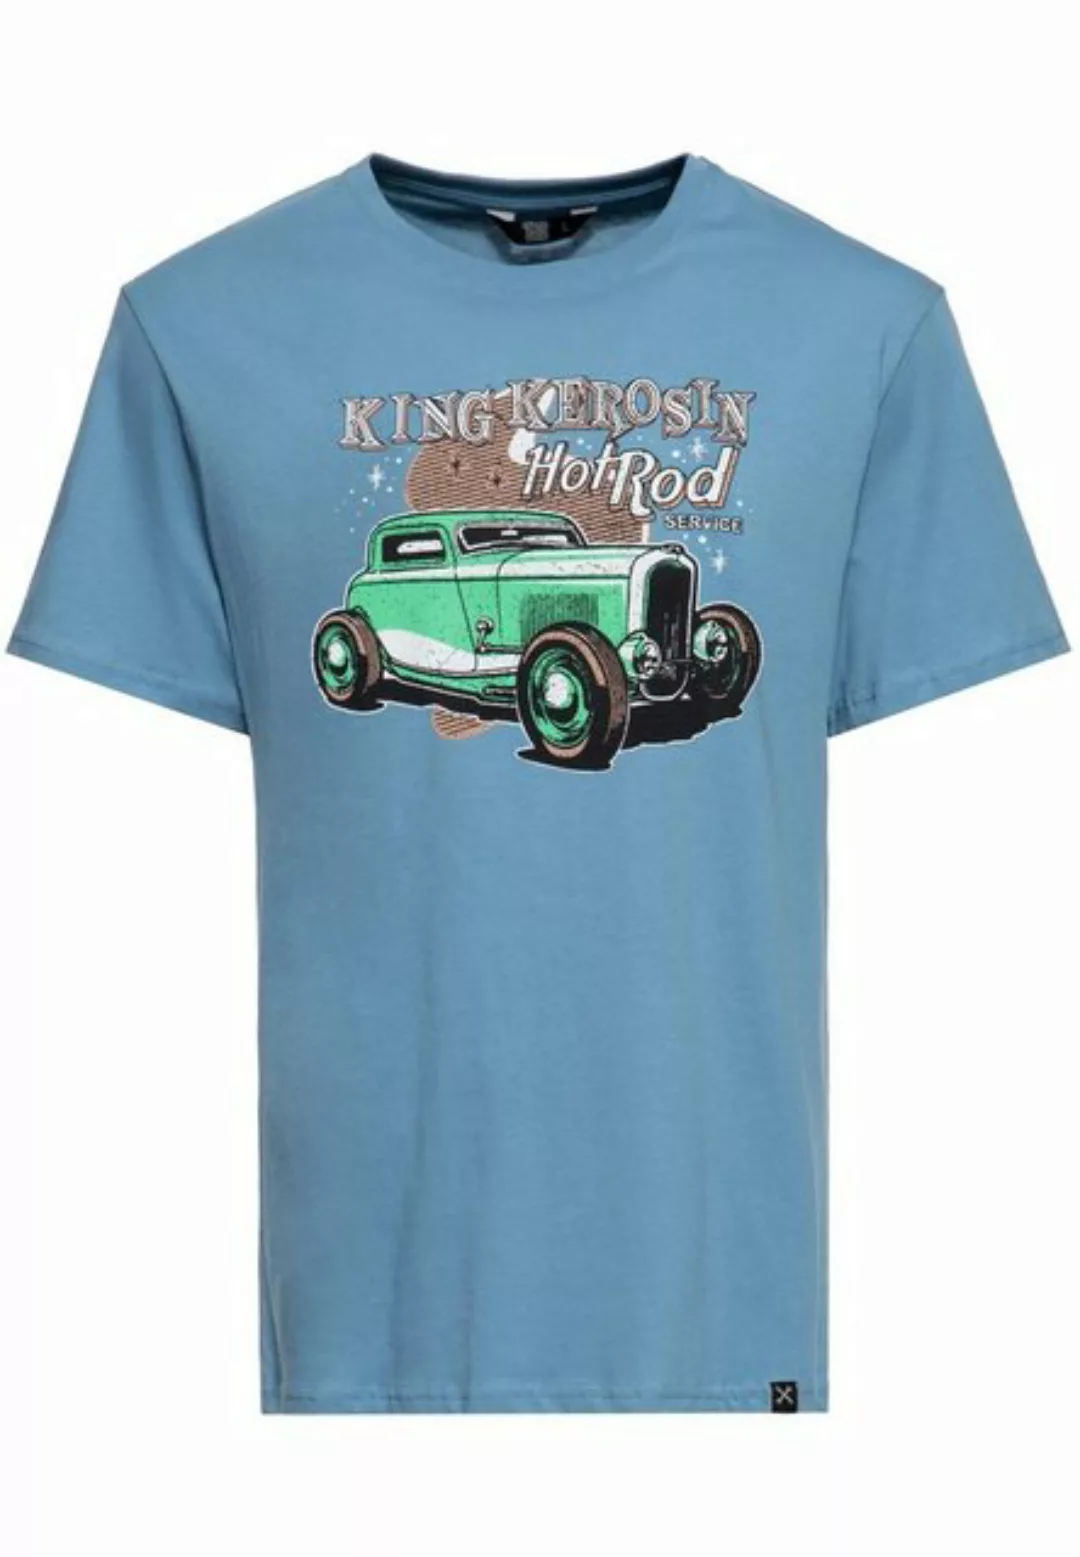 KingKerosin Print-Shirt Hotrod Service mit Retro-Artwork Print günstig online kaufen